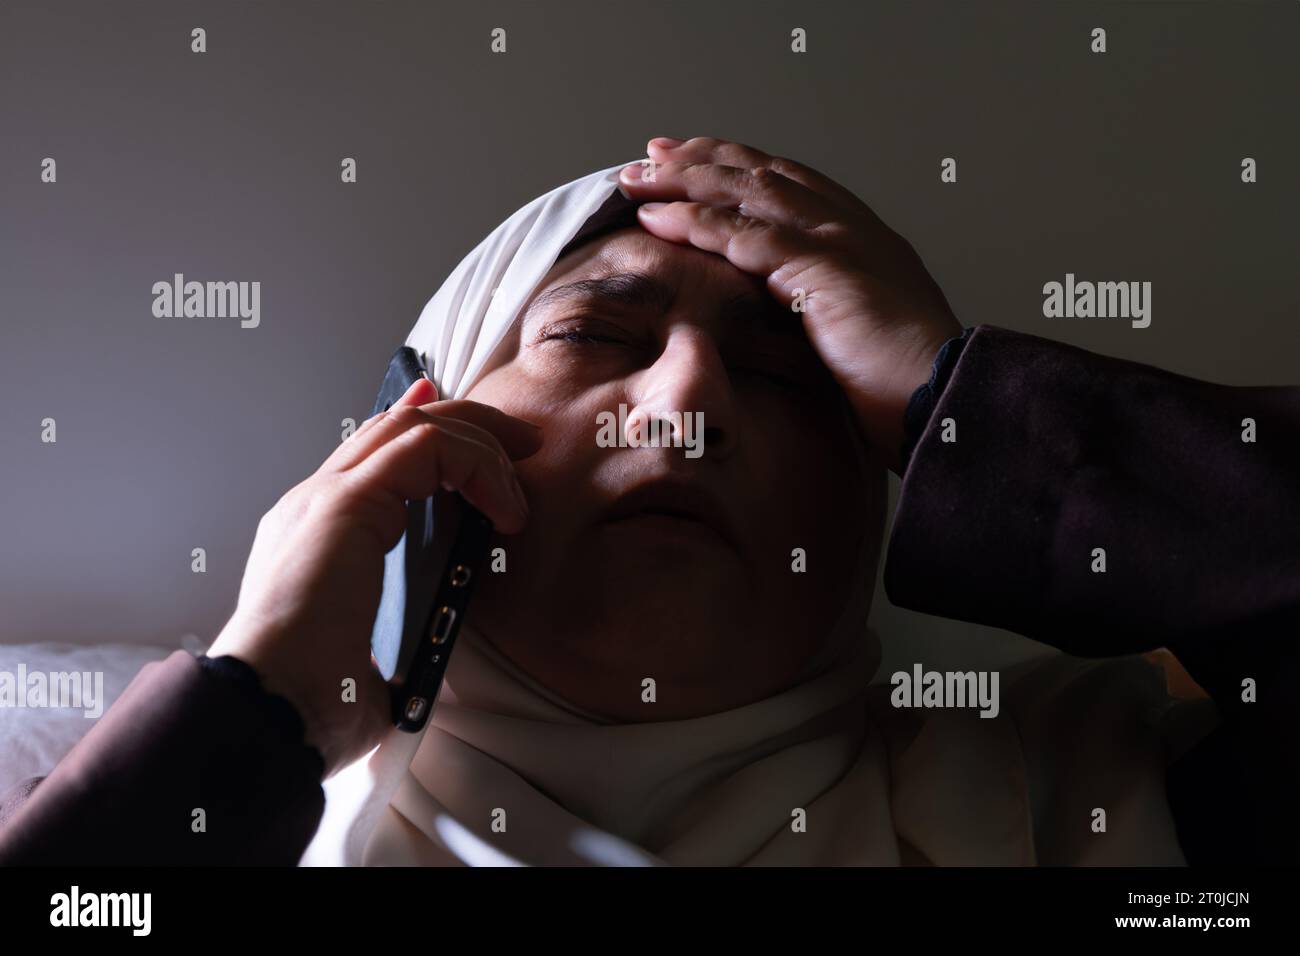 Une femme musulmane a été informée par appel téléphonique de nouvelles choquantes ou de malheurs, et son expression montre l'impuissance et la peur. Banque D'Images